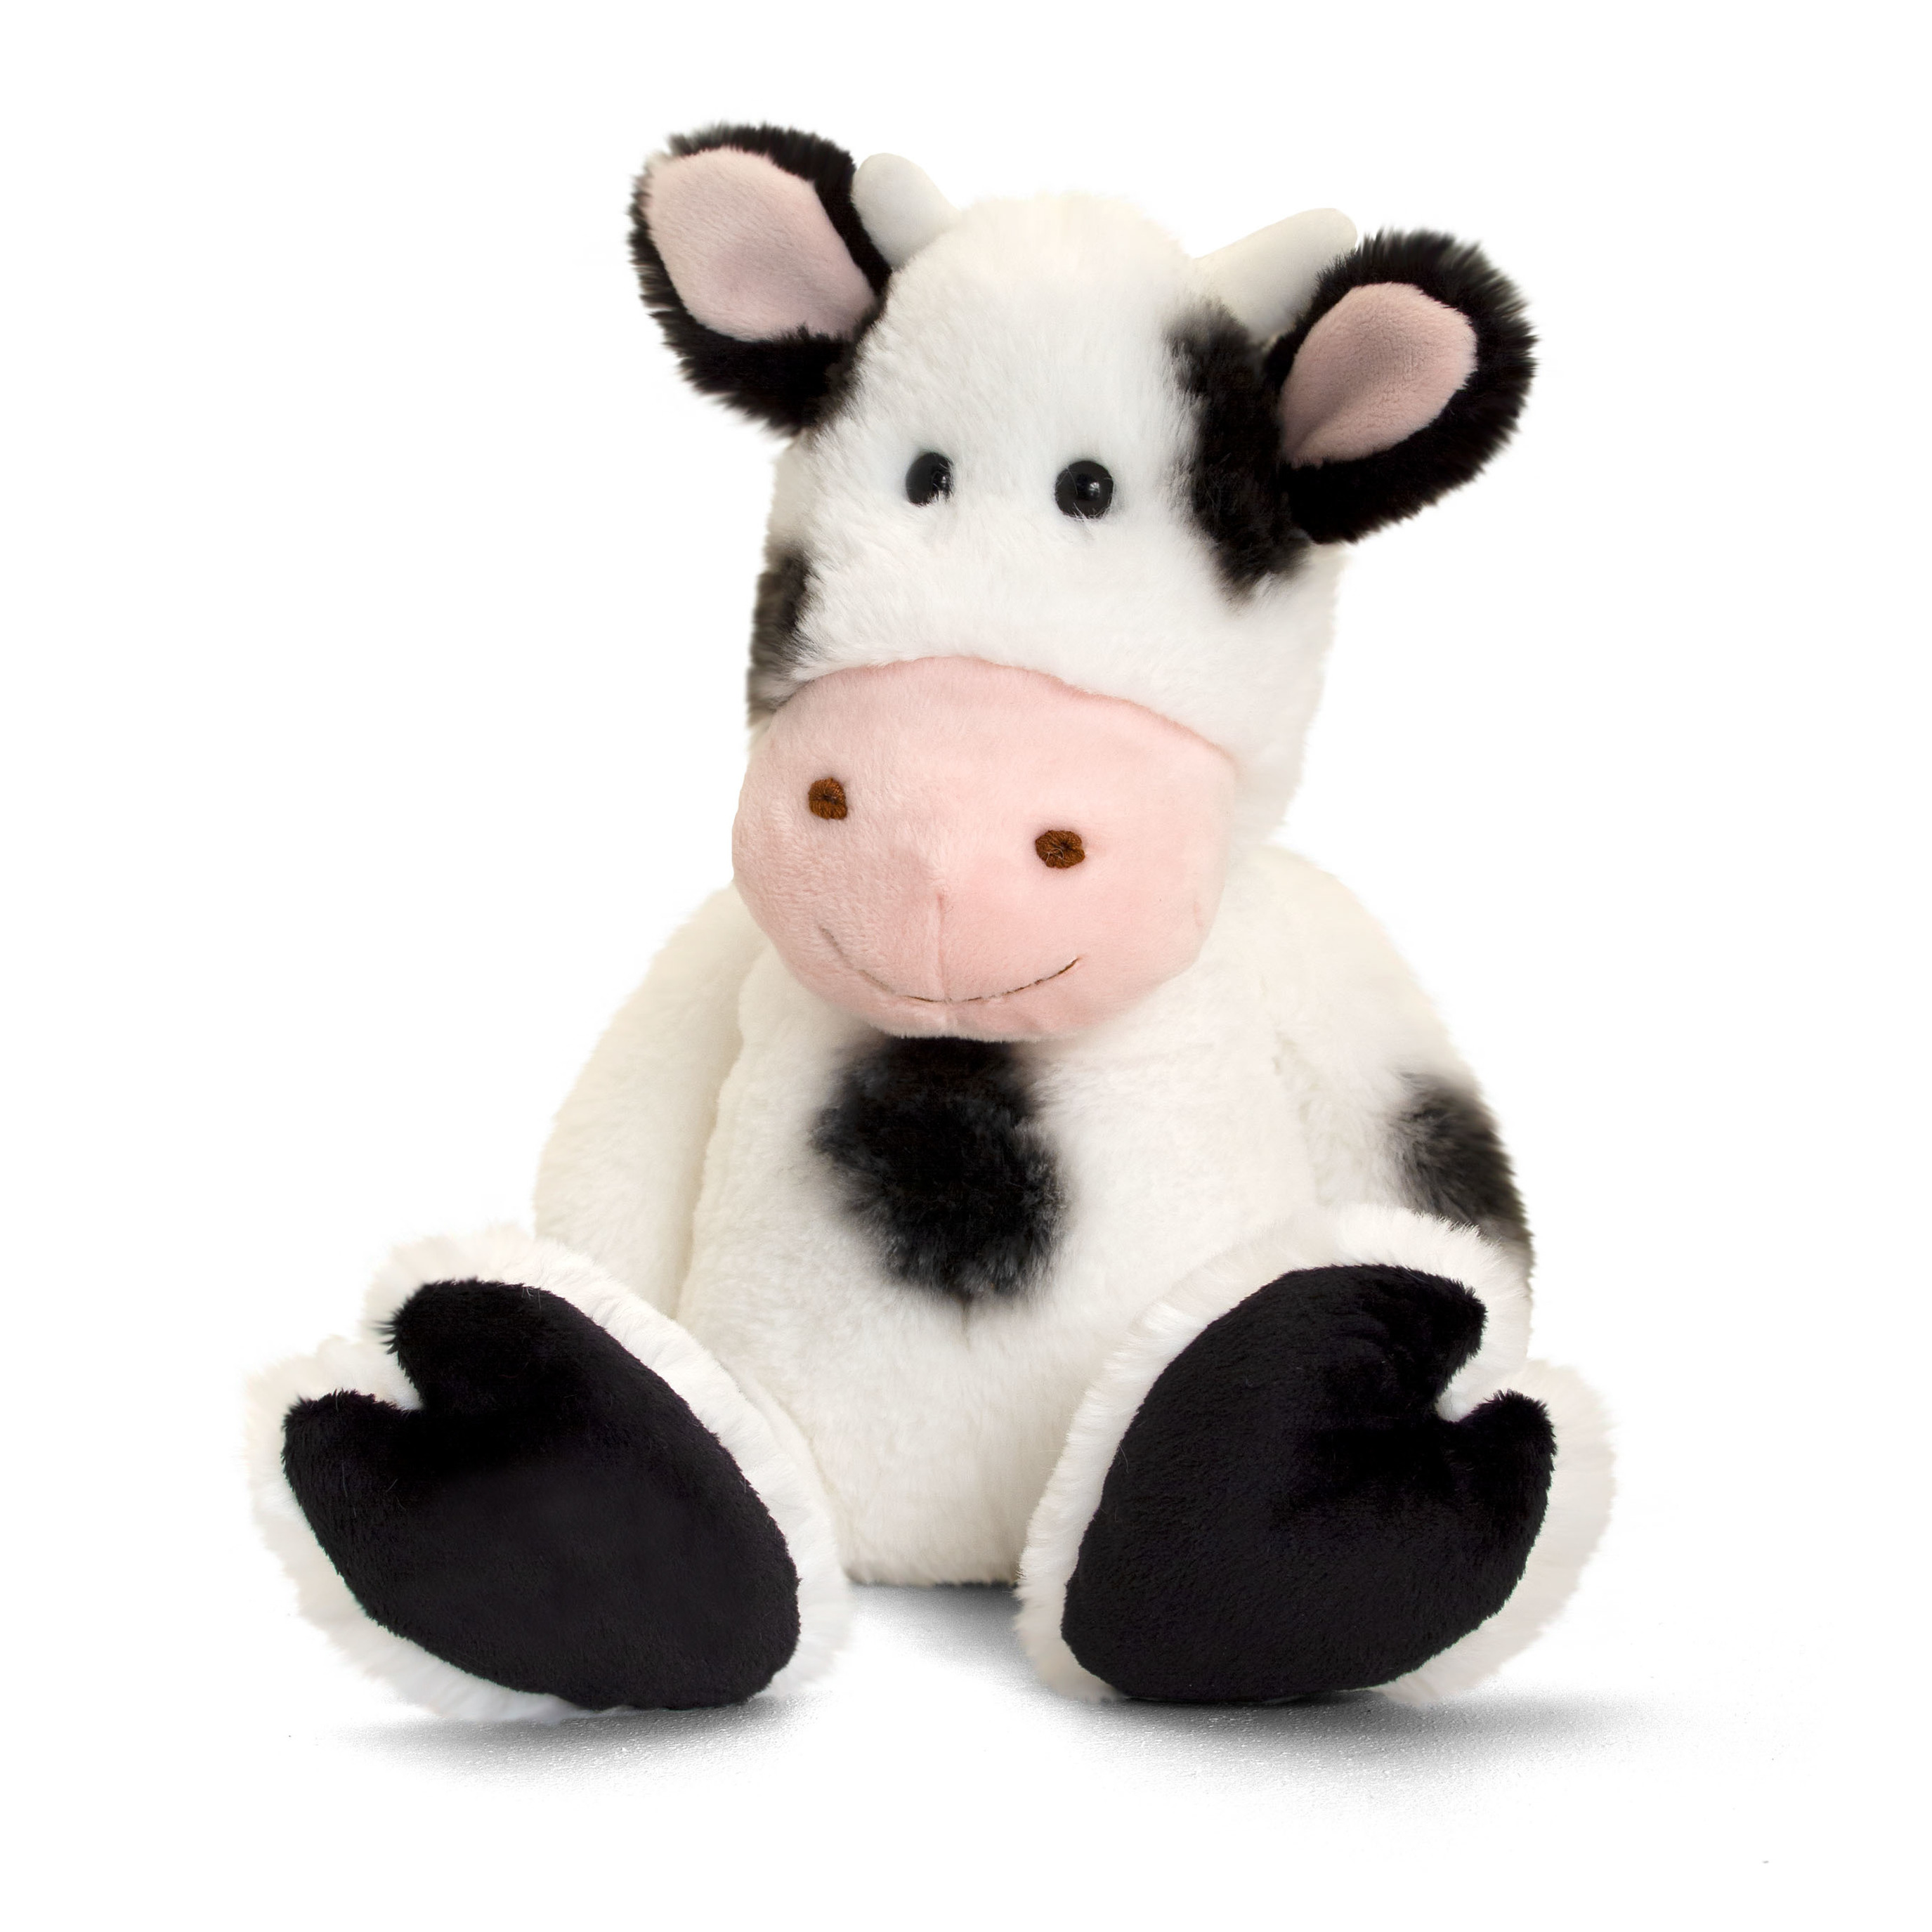 Pluche knuffel dier zwart-witte koe 18 cm